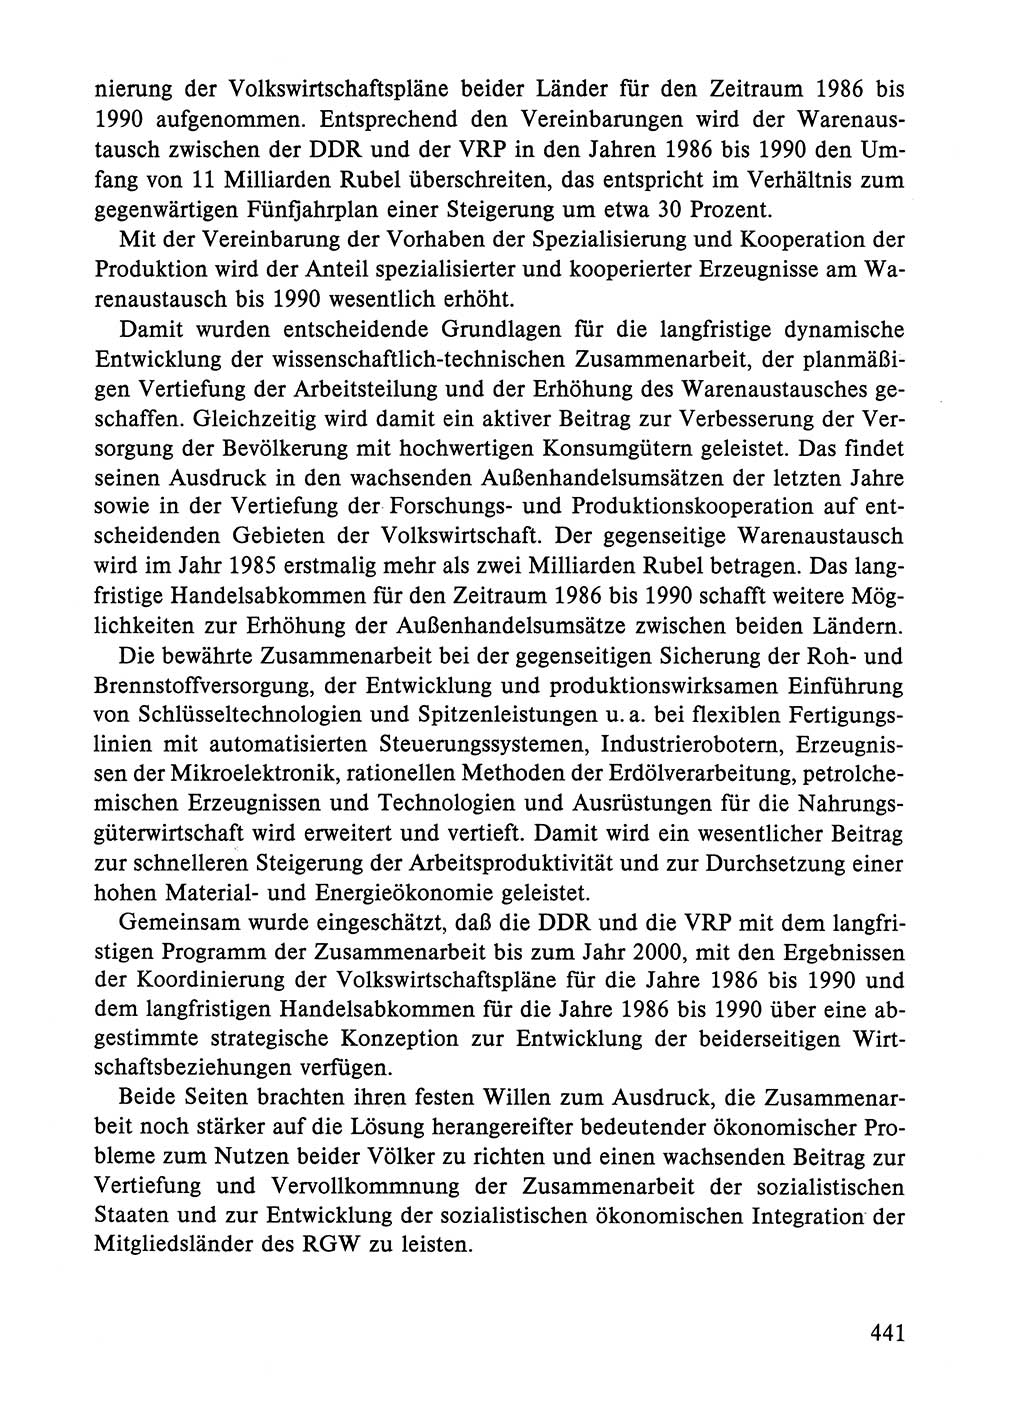 Dokumente der Sozialistischen Einheitspartei Deutschlands (SED) [Deutsche Demokratische Republik (DDR)] 1984-1985, Seite 441 (Dok. SED DDR 1984-1985, S. 441)